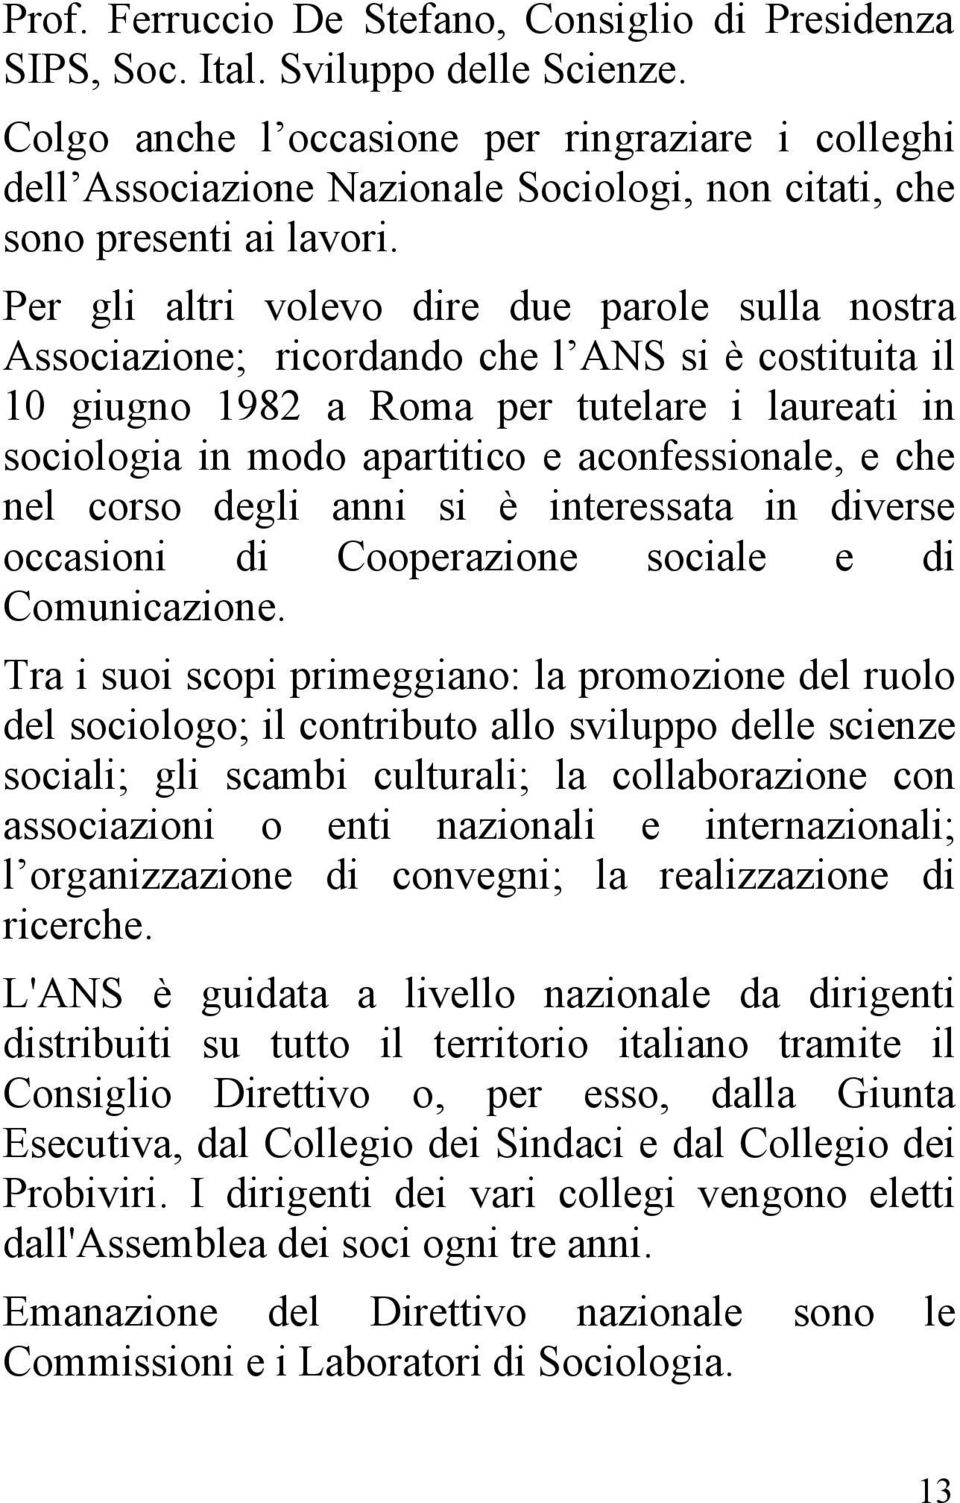 Per gli altri volevo dire due parole sulla nostra Associazione; ricordando che l ANS si è costituita il 10 giugno 1982 a Roma per tutelare i laureati in sociologia in modo apartitico e